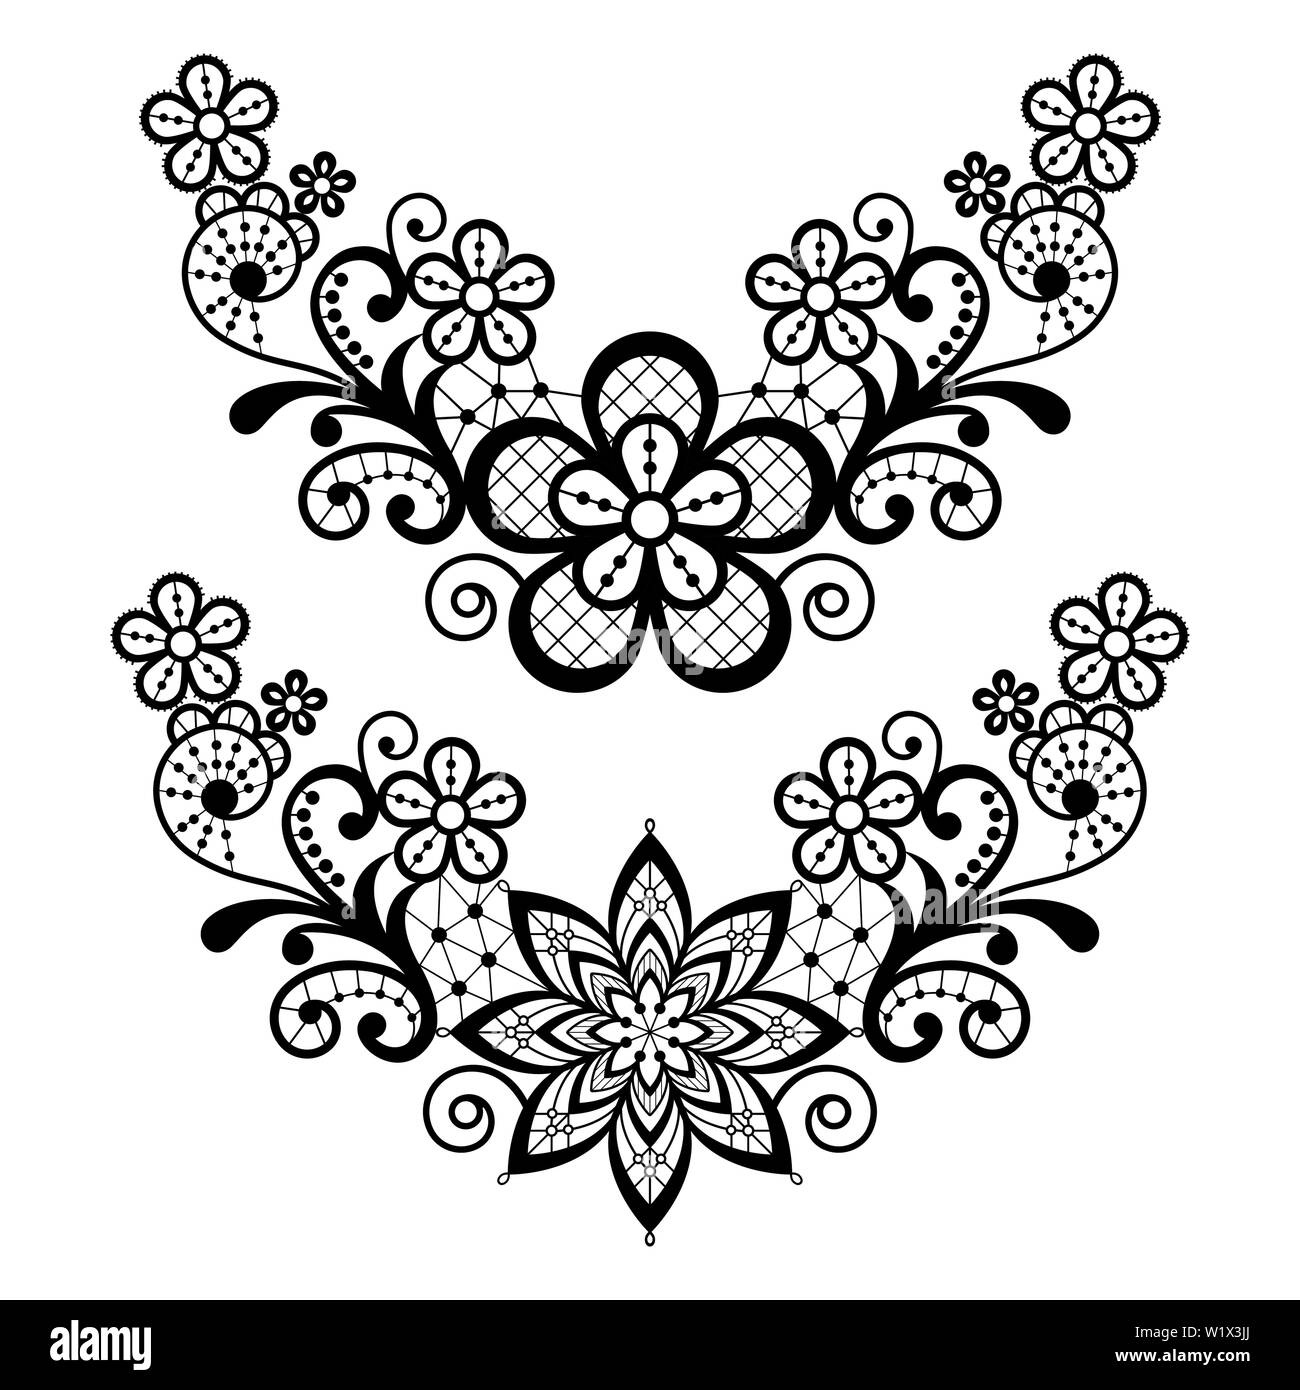 Spitze Vektor pattern - Blumenspitze Hälfte Kranz, halbrunde Design Collection, Retro durchbrochene Hintergrund Stock Vektor